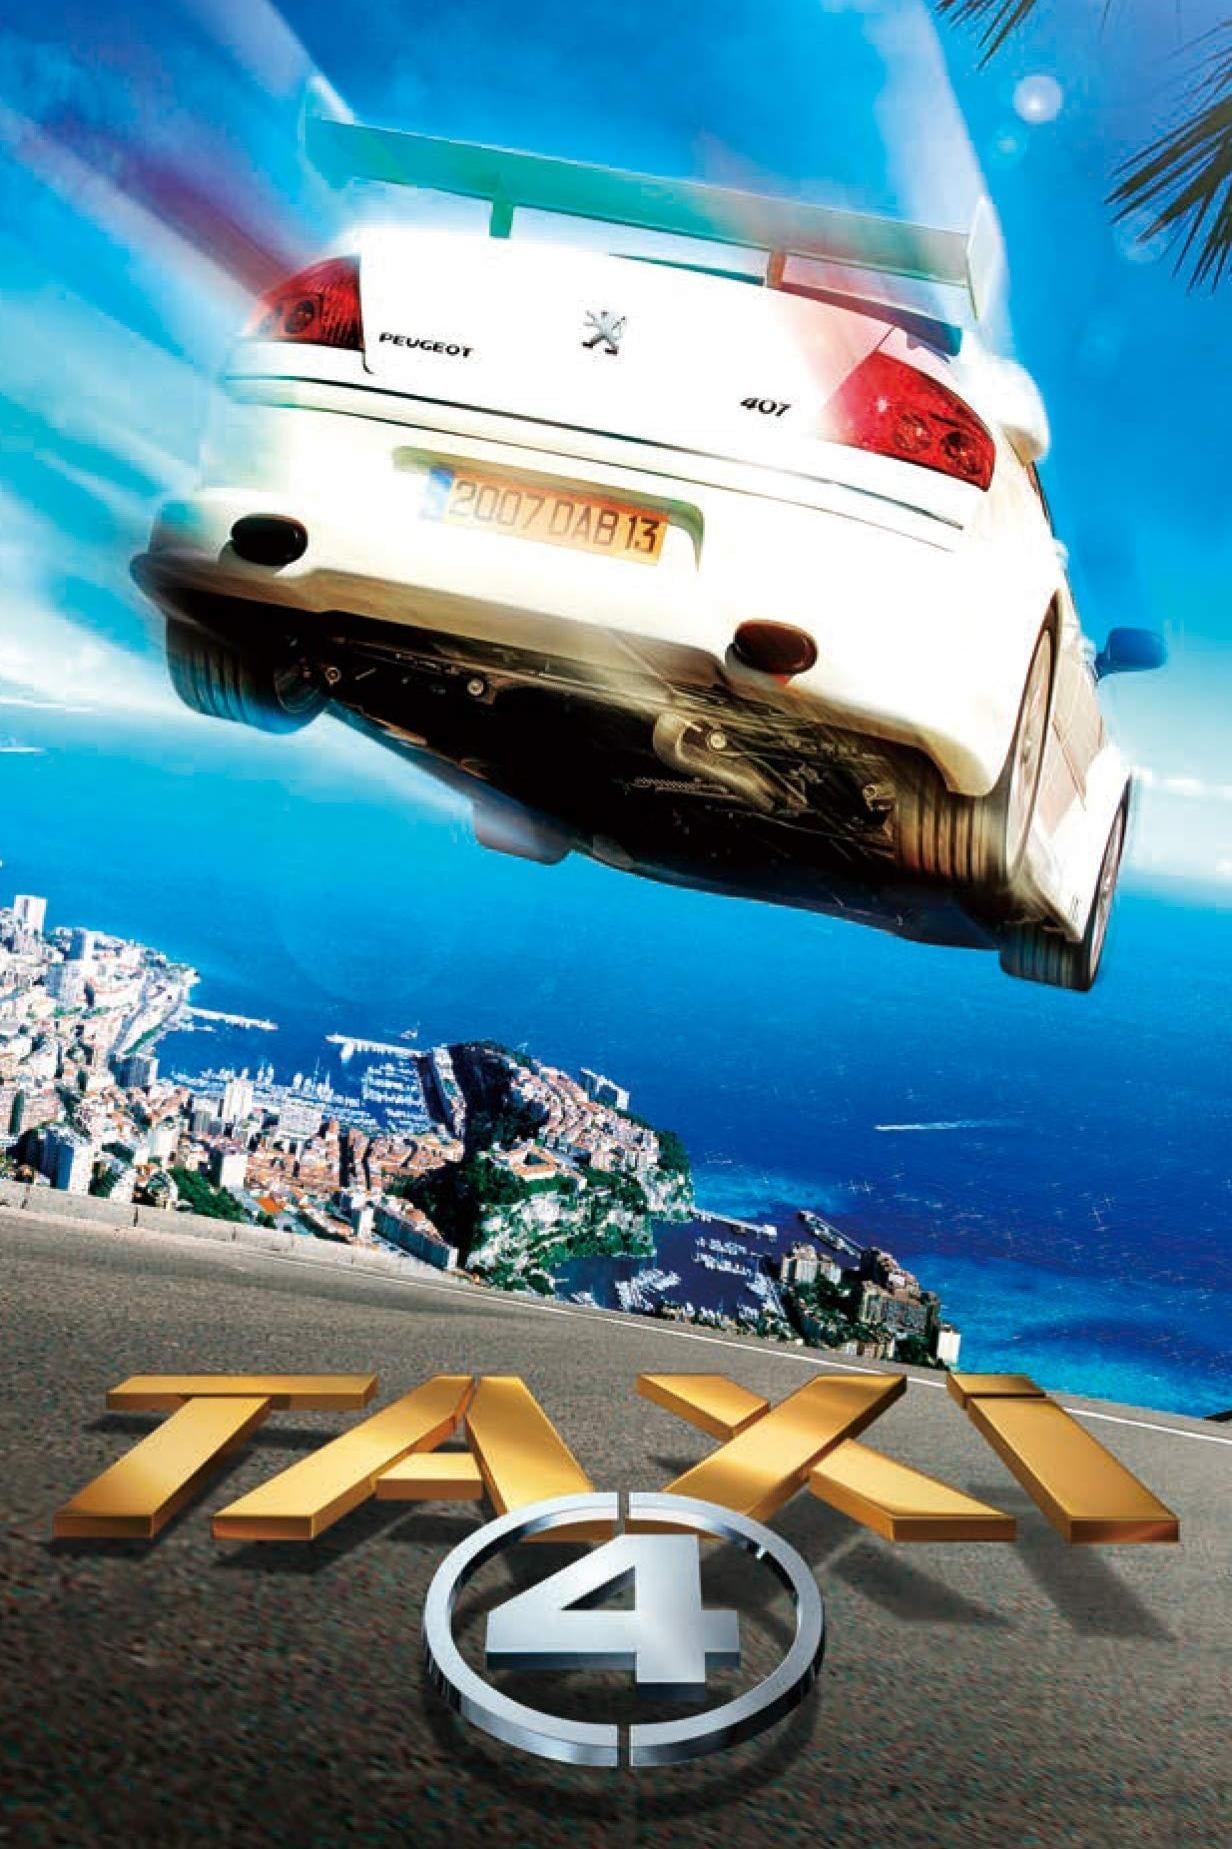 ดูหนังออนไลน์ฟรี Taxi 4 แท็กซี่ 4 ซิ่งระเบิด บ้าระห่ำ